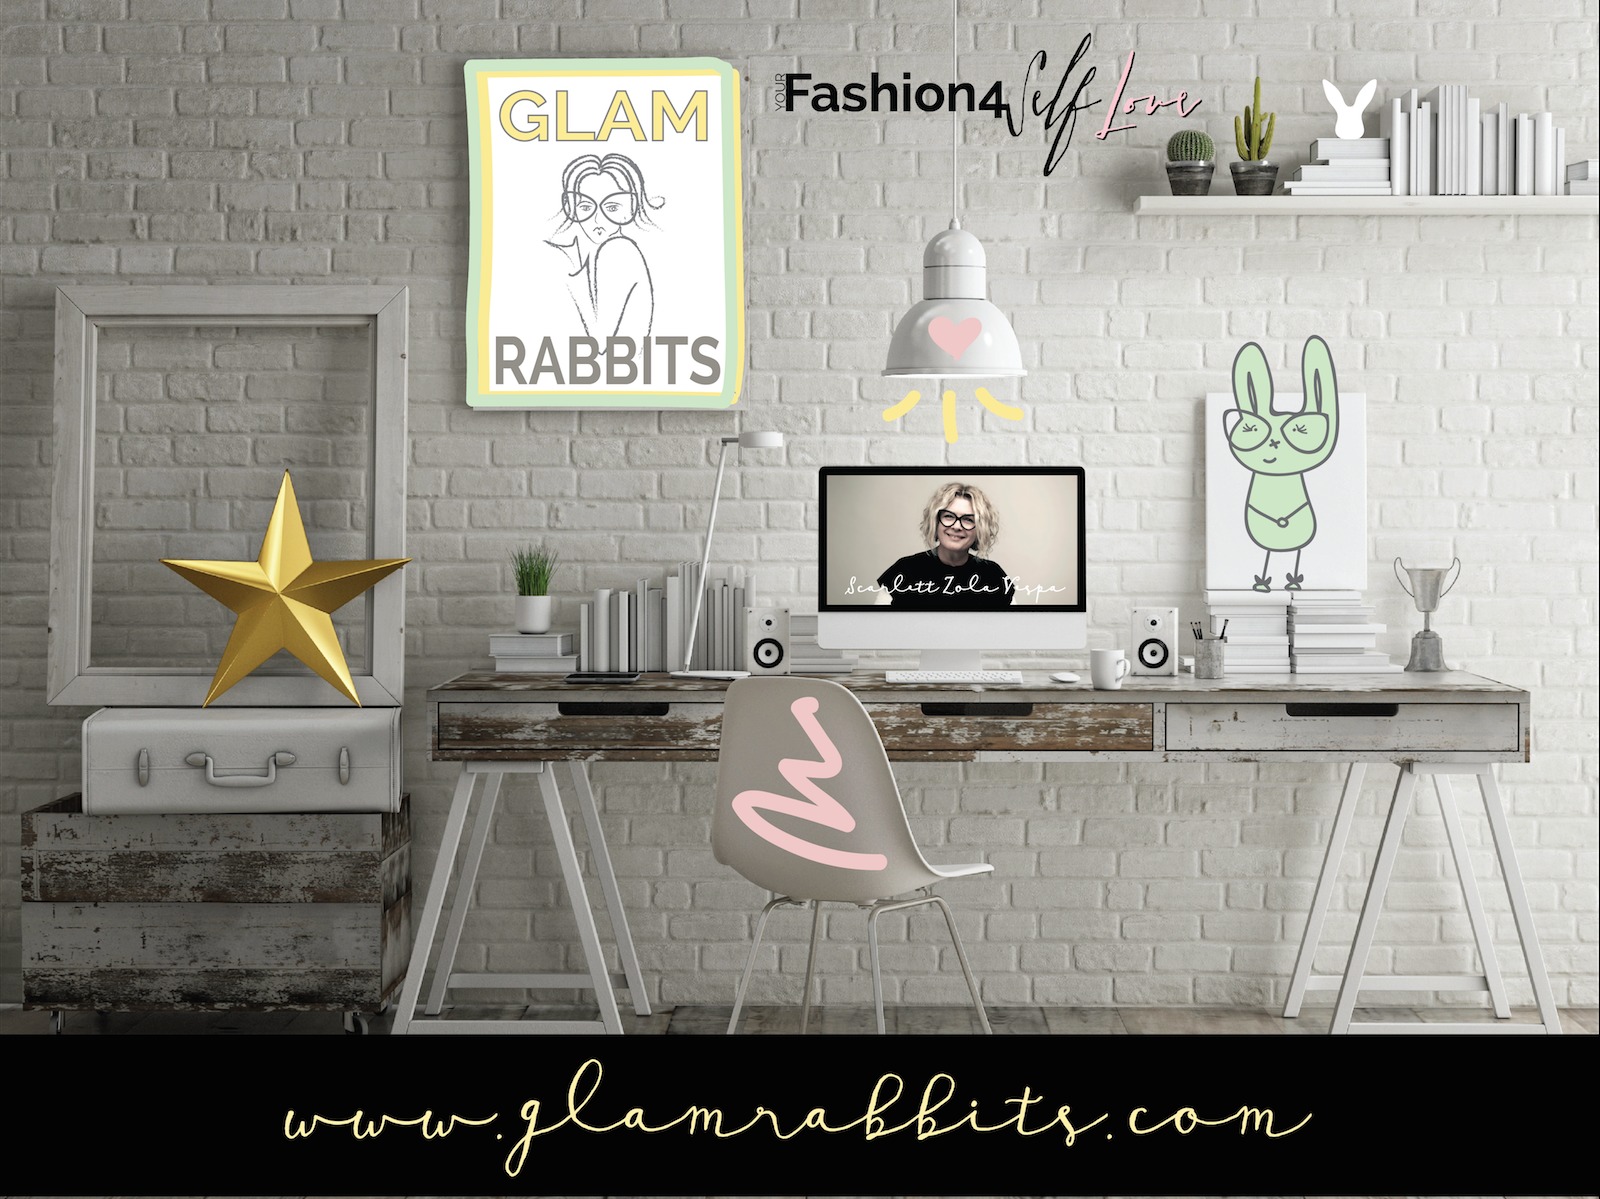 Scarlett's Blog 'Glam Rabbits' www.glamrabbits.com - Illustration by Scarlett Zola Vespa